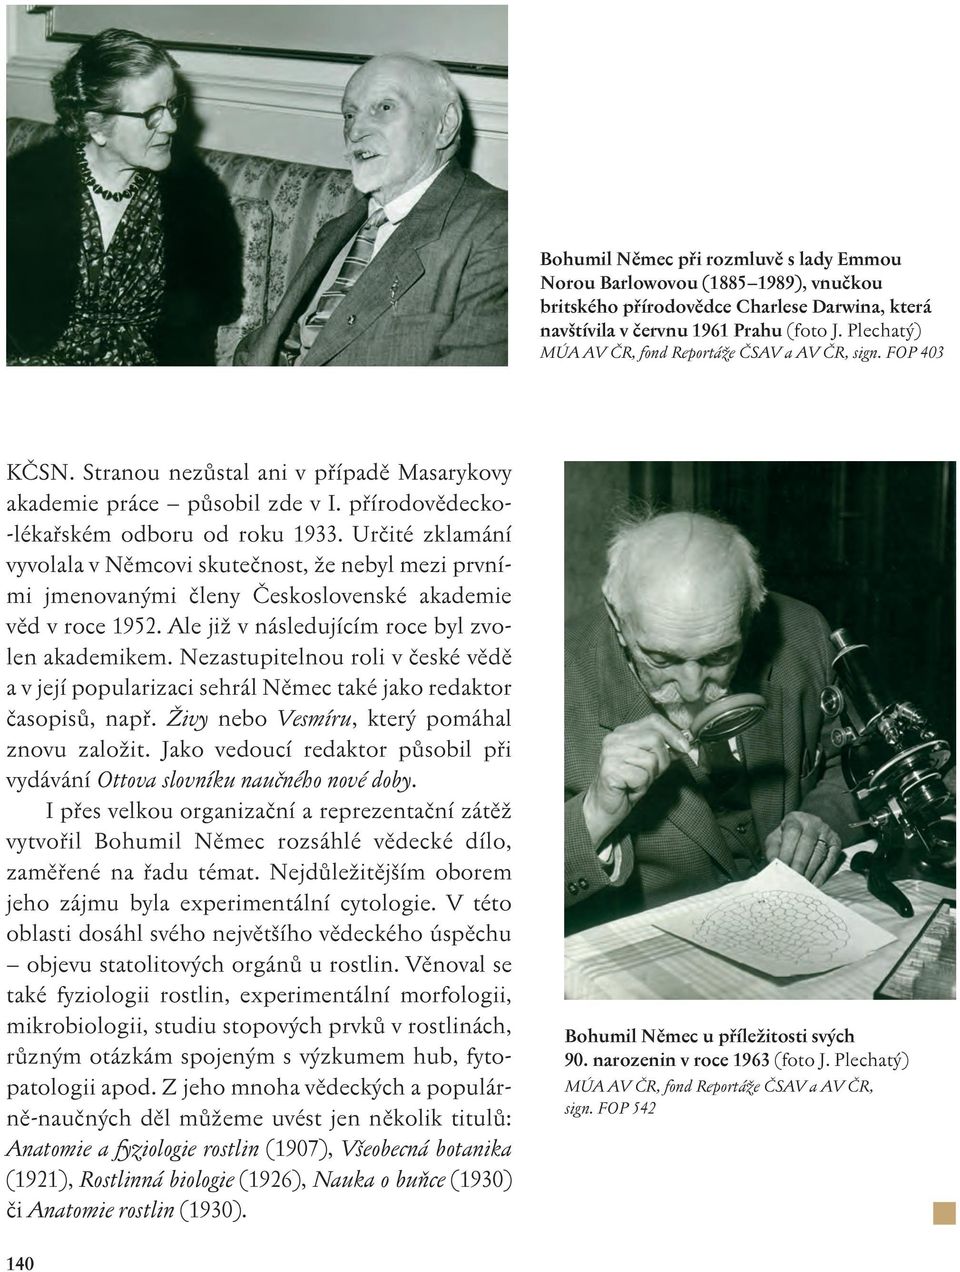 Určité zklamání vyvolala v Němcovi skutečnost, že nebyl mezi prvními jmenovanými členy Československé akademie věd v roce 1952. Ale již v následujícím roce byl zvolen akademikem.